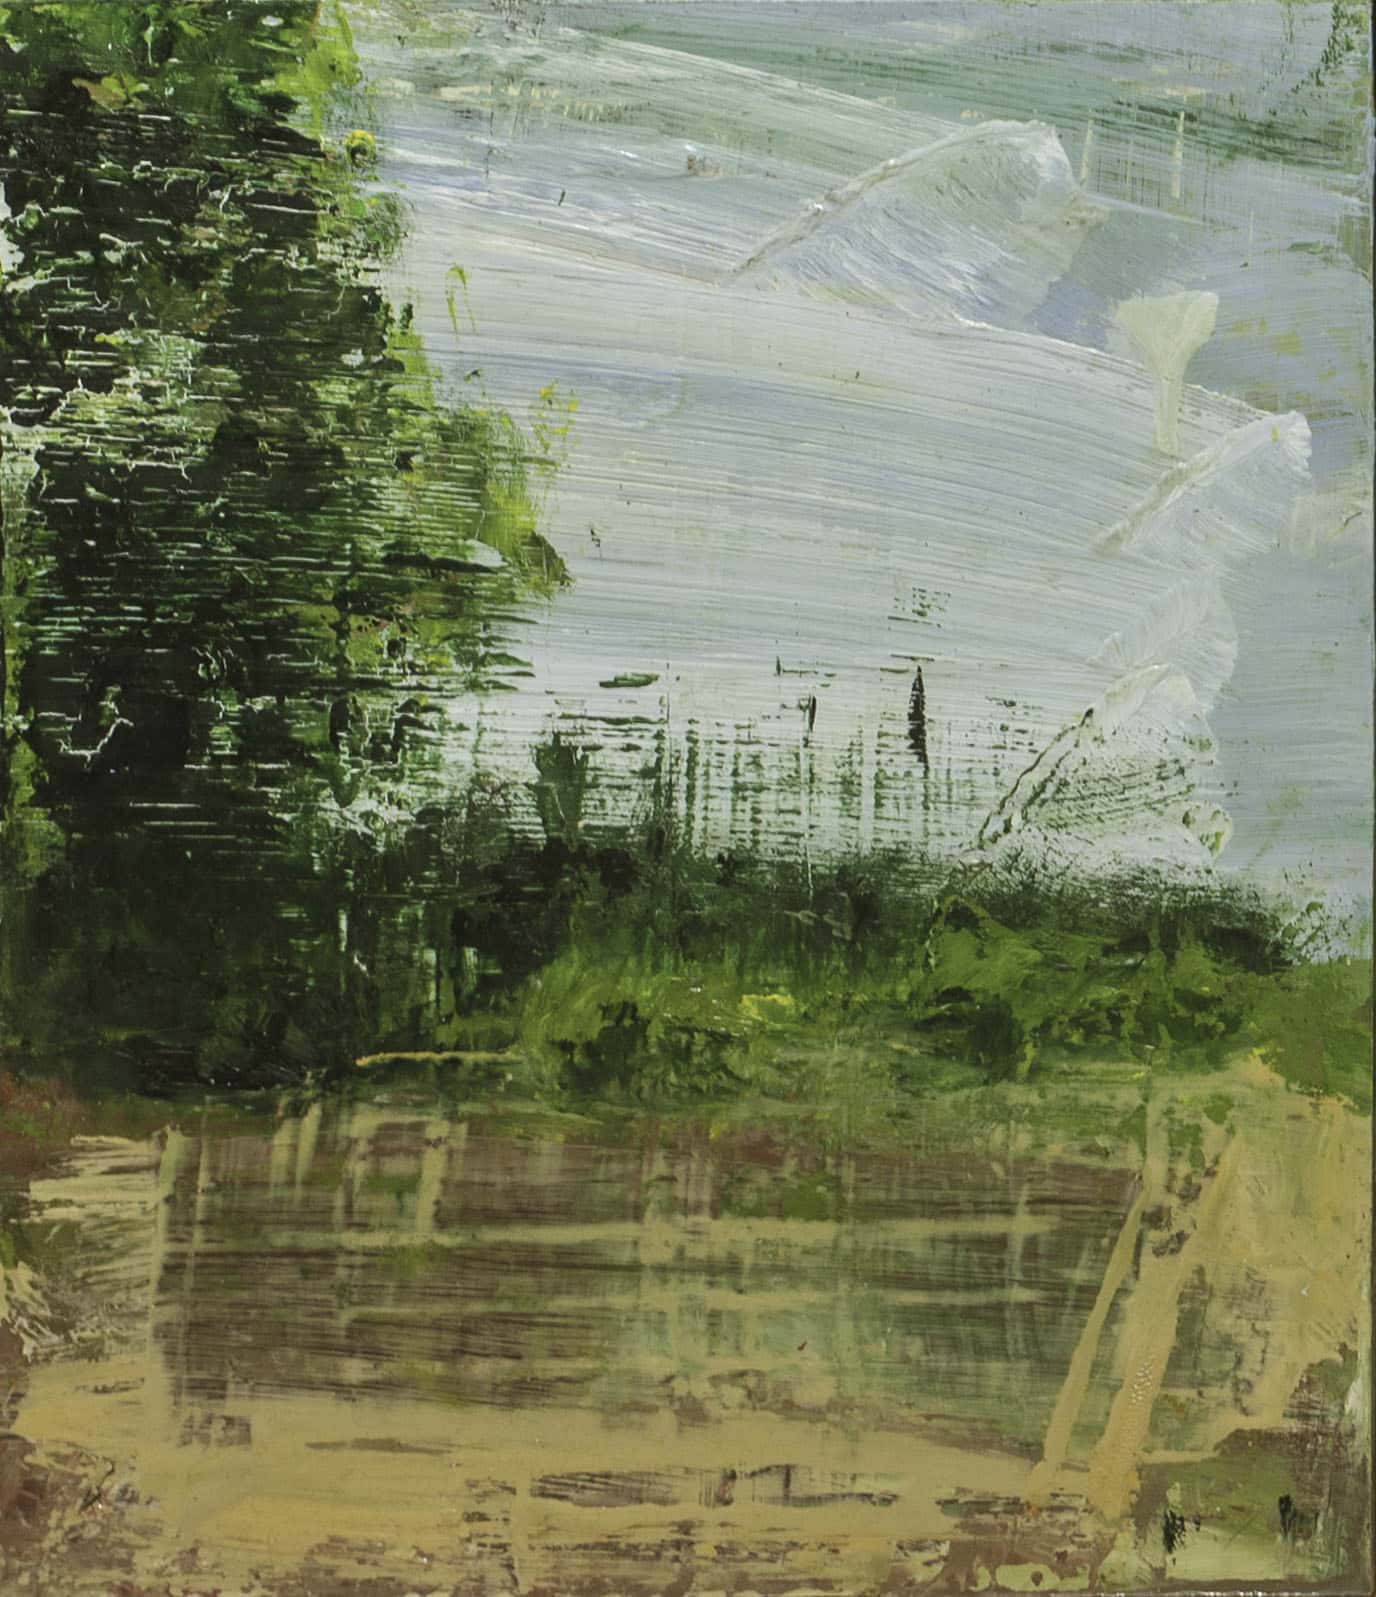 עופרי מרום, "נופים בשולי הדרך", 2013, שמן על לוח עץ, 25x30 ס"מ